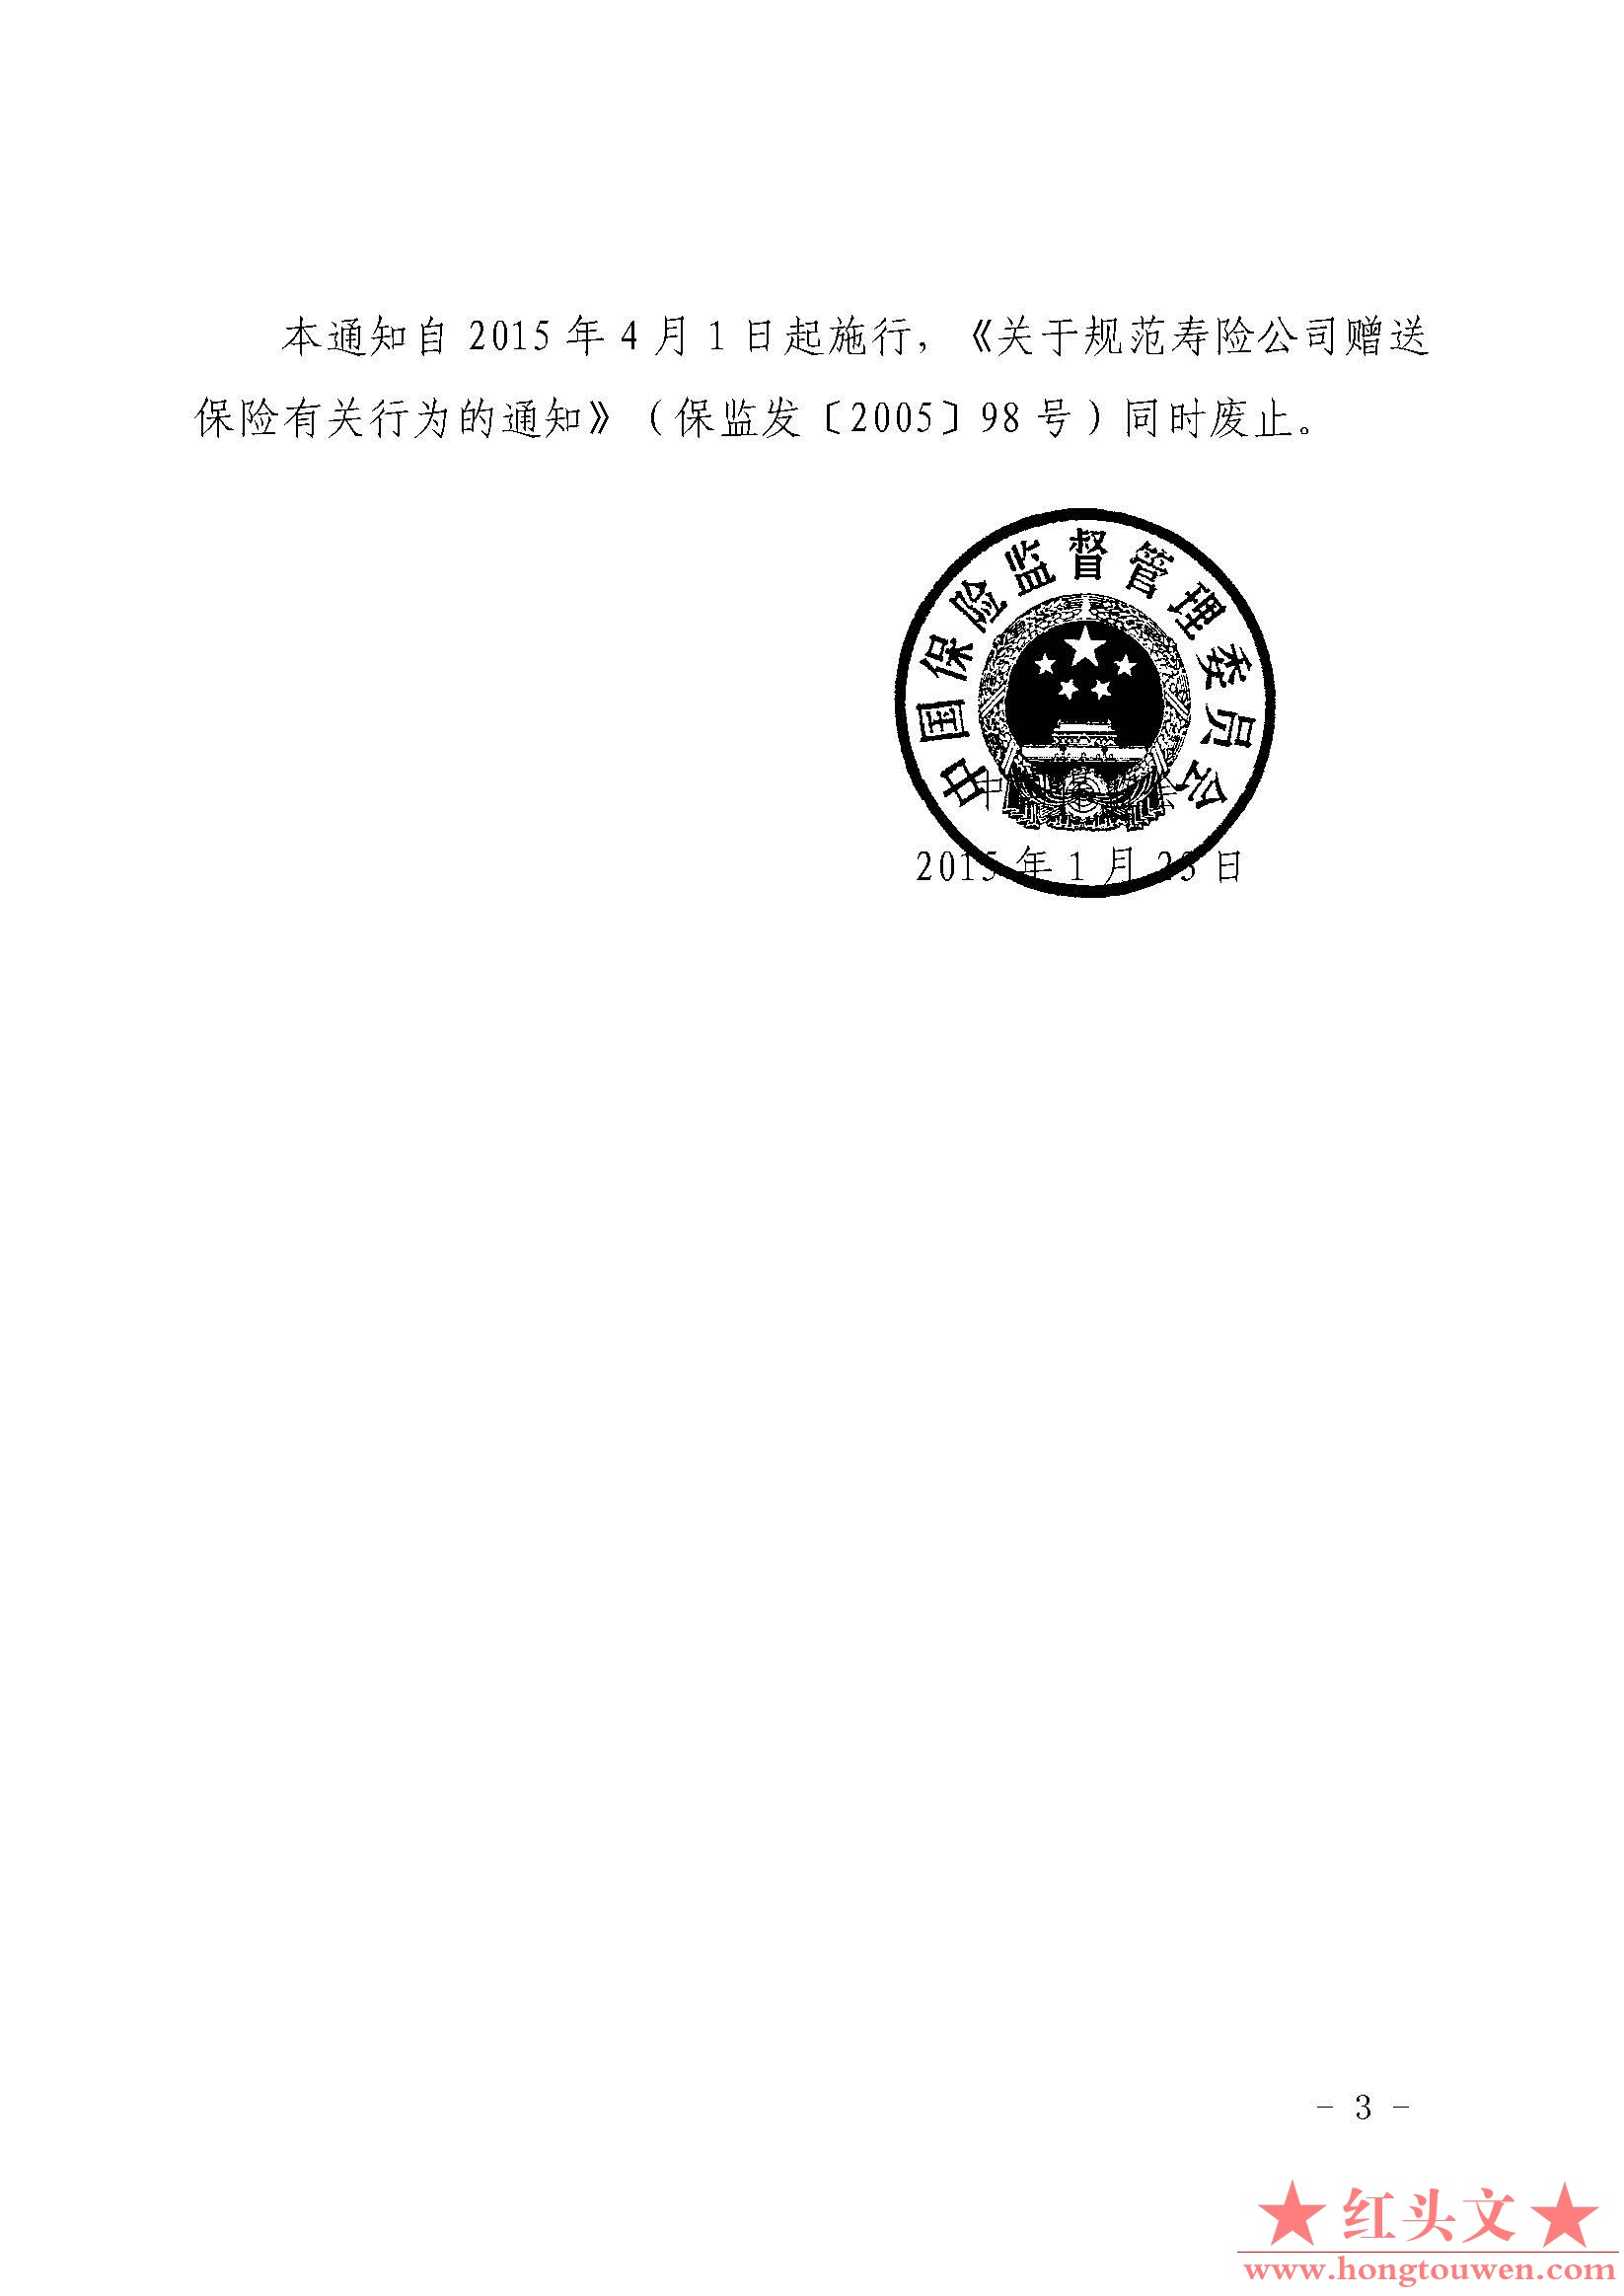 保监发[2015]12号-中国保监会关于规范人身保险公司赠送保险有关行为的通知_页面_3.jpg.jpg